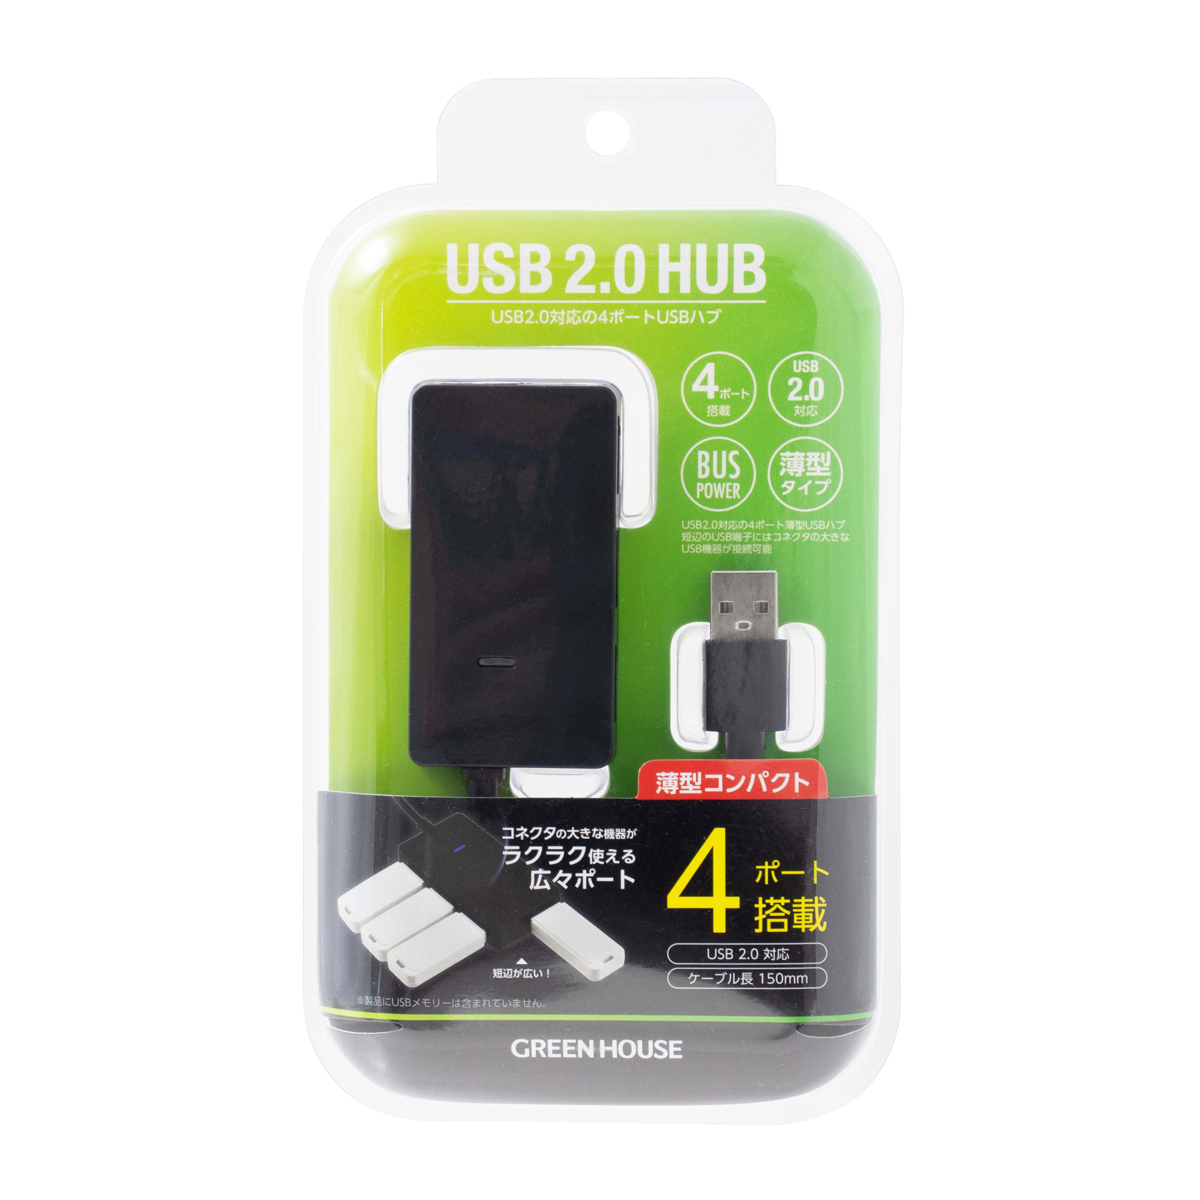 同梱可能 USBハブ 4ポート 広々ポート搭載 グリーンハウス GH-HB2A4A-BK/7113 ブラック_画像2